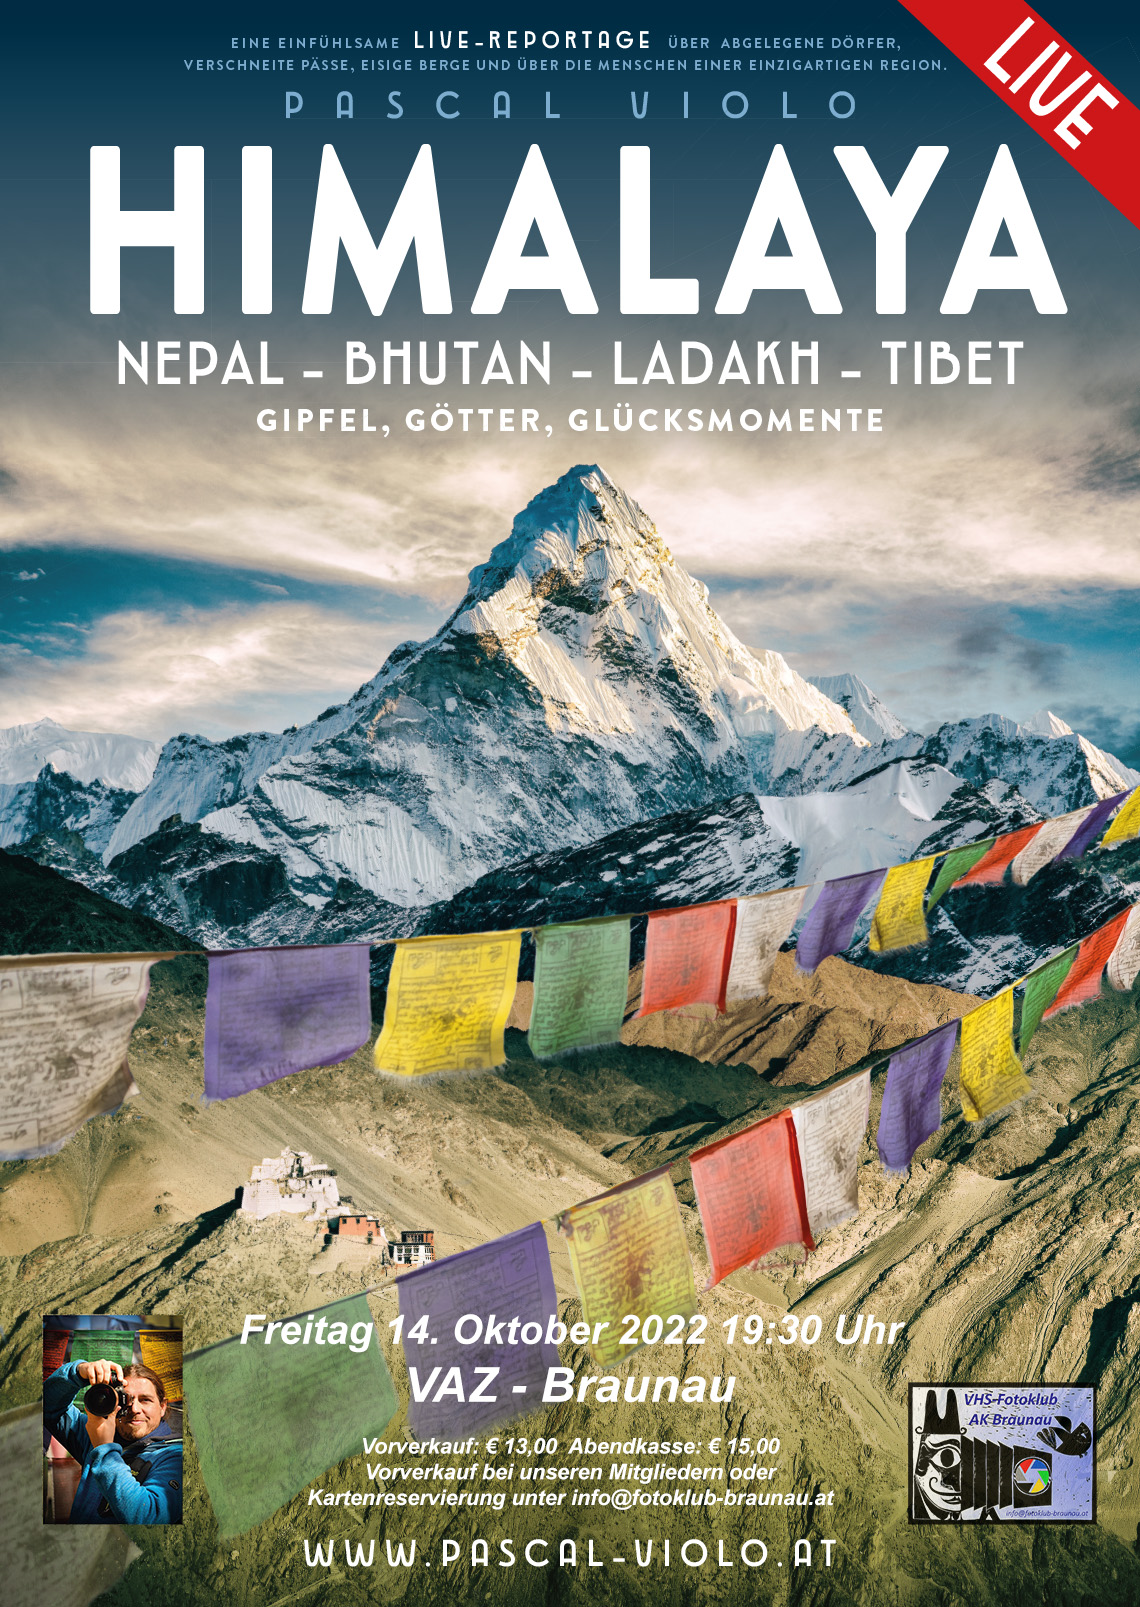 HIMALAYA - Gipfel, Götter, Glücksmomente